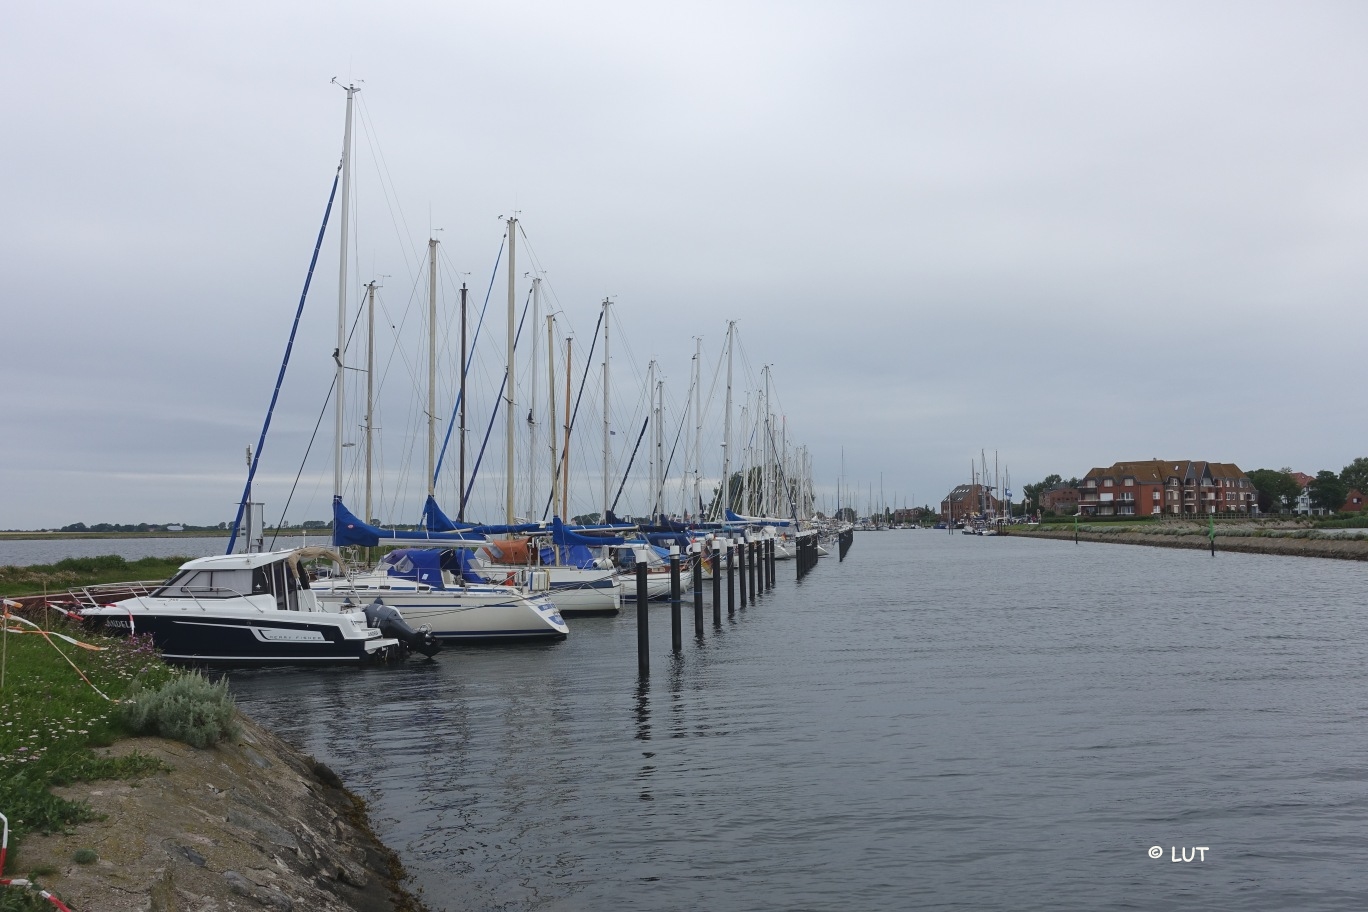 Hafen Orth, Fehmarn